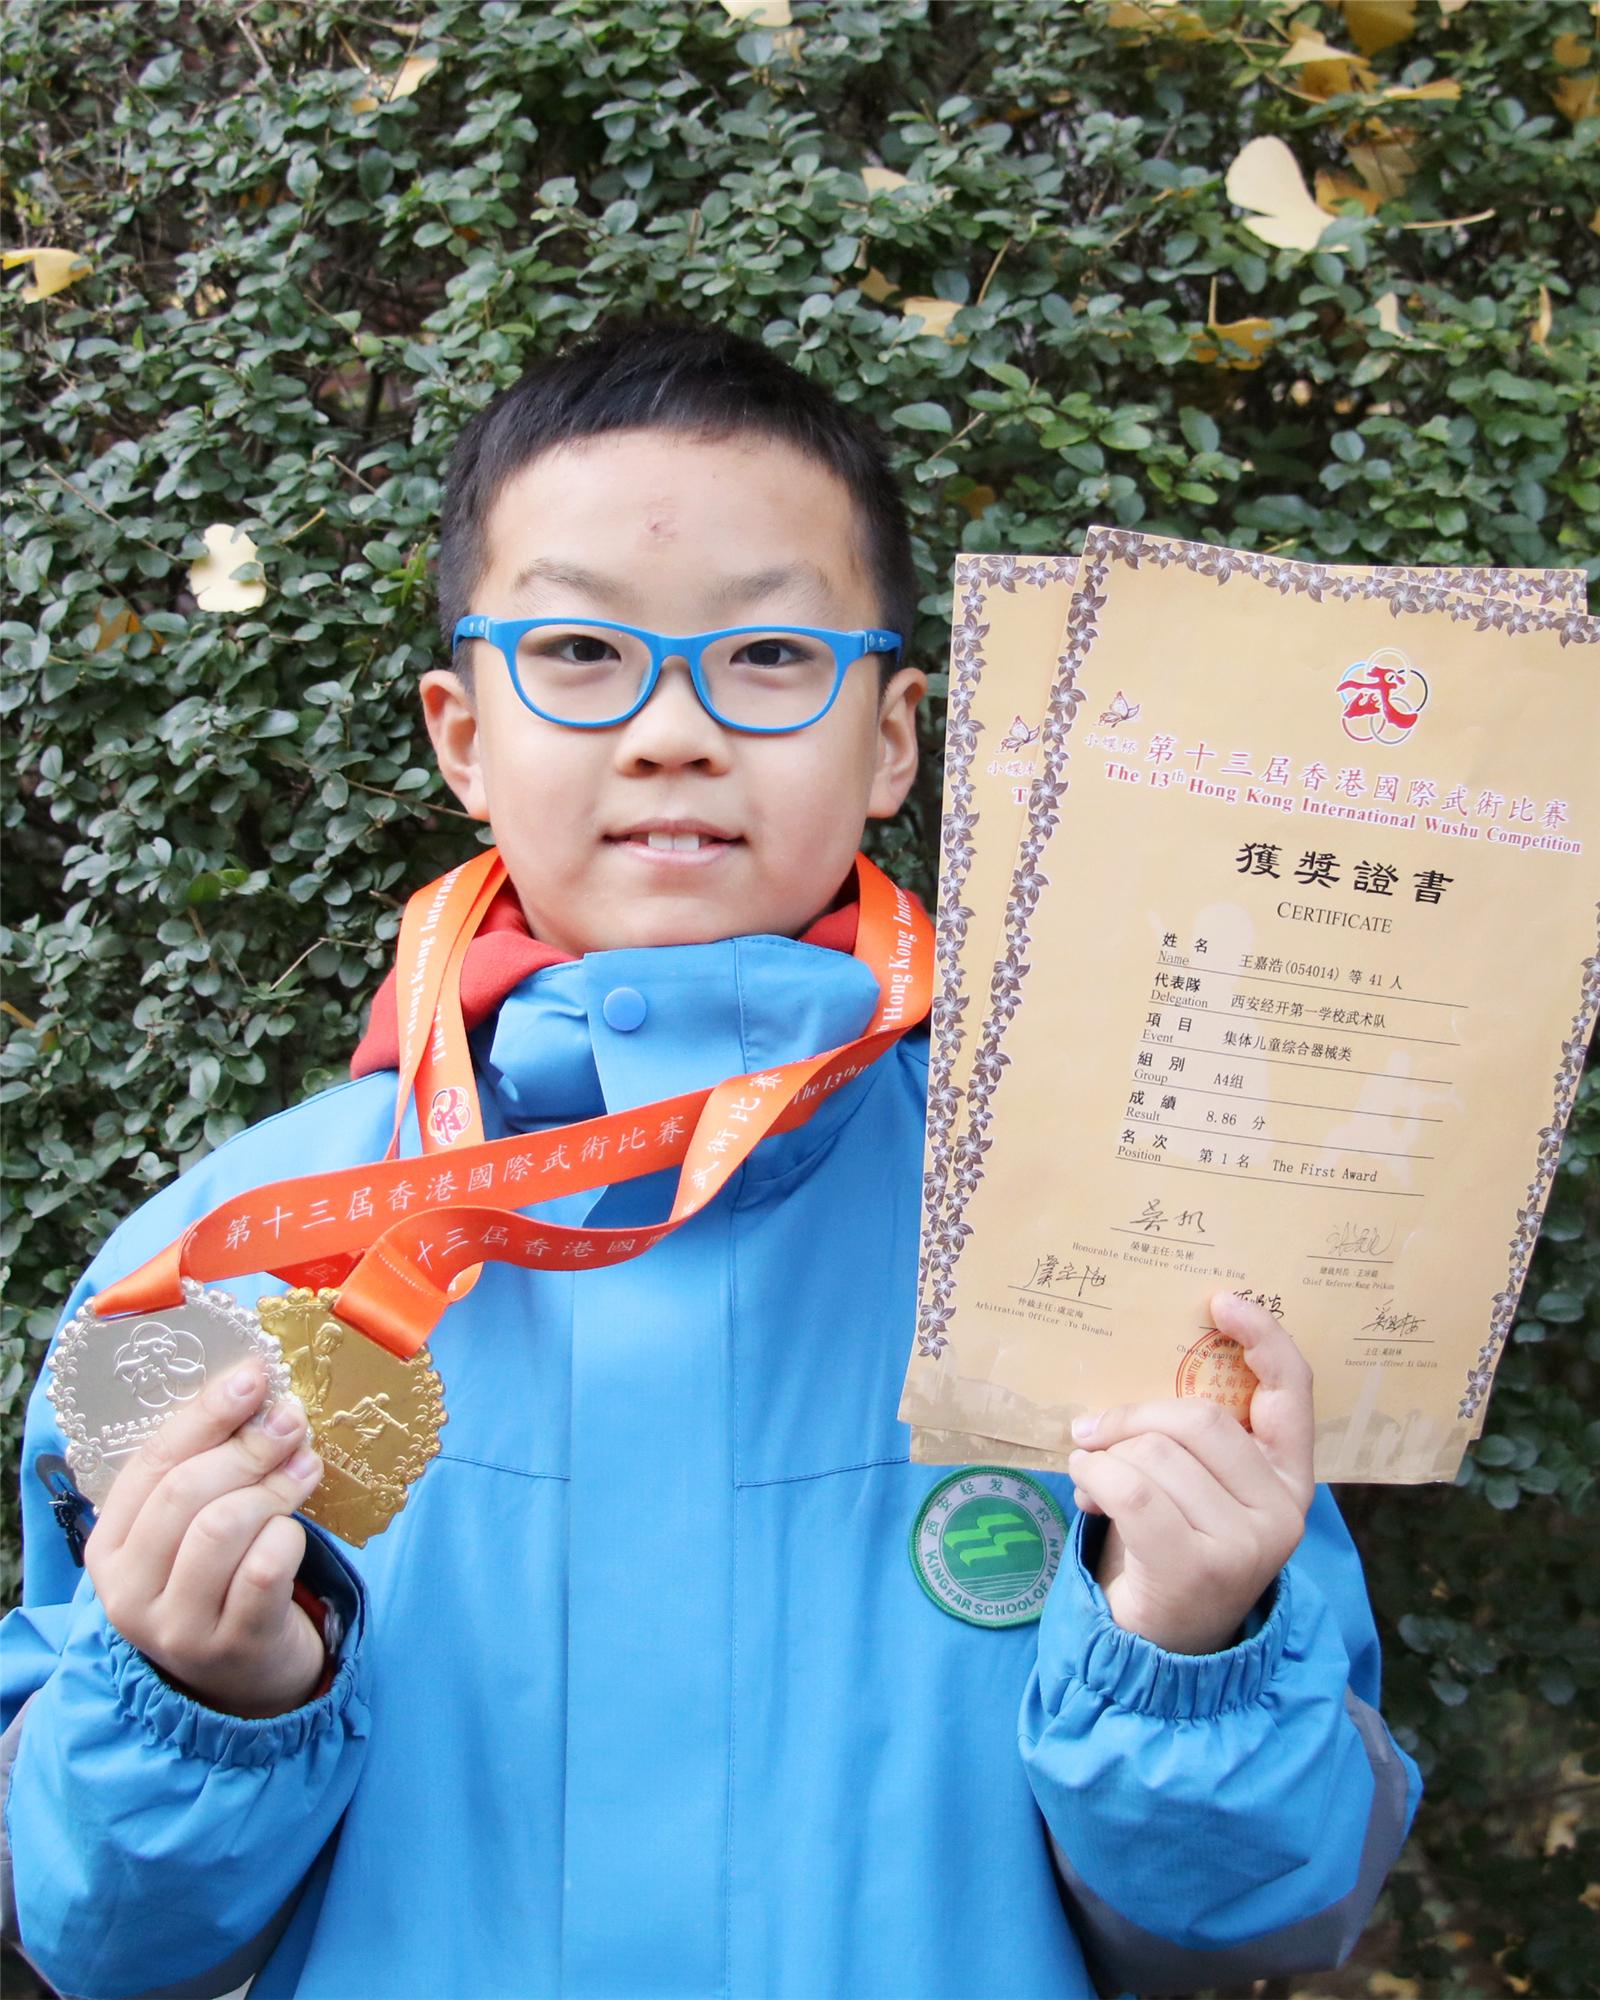 五年级九班 王嘉浩 第十三届香港国际武术比赛集体儿童综合器械类A4组第一名.jpg